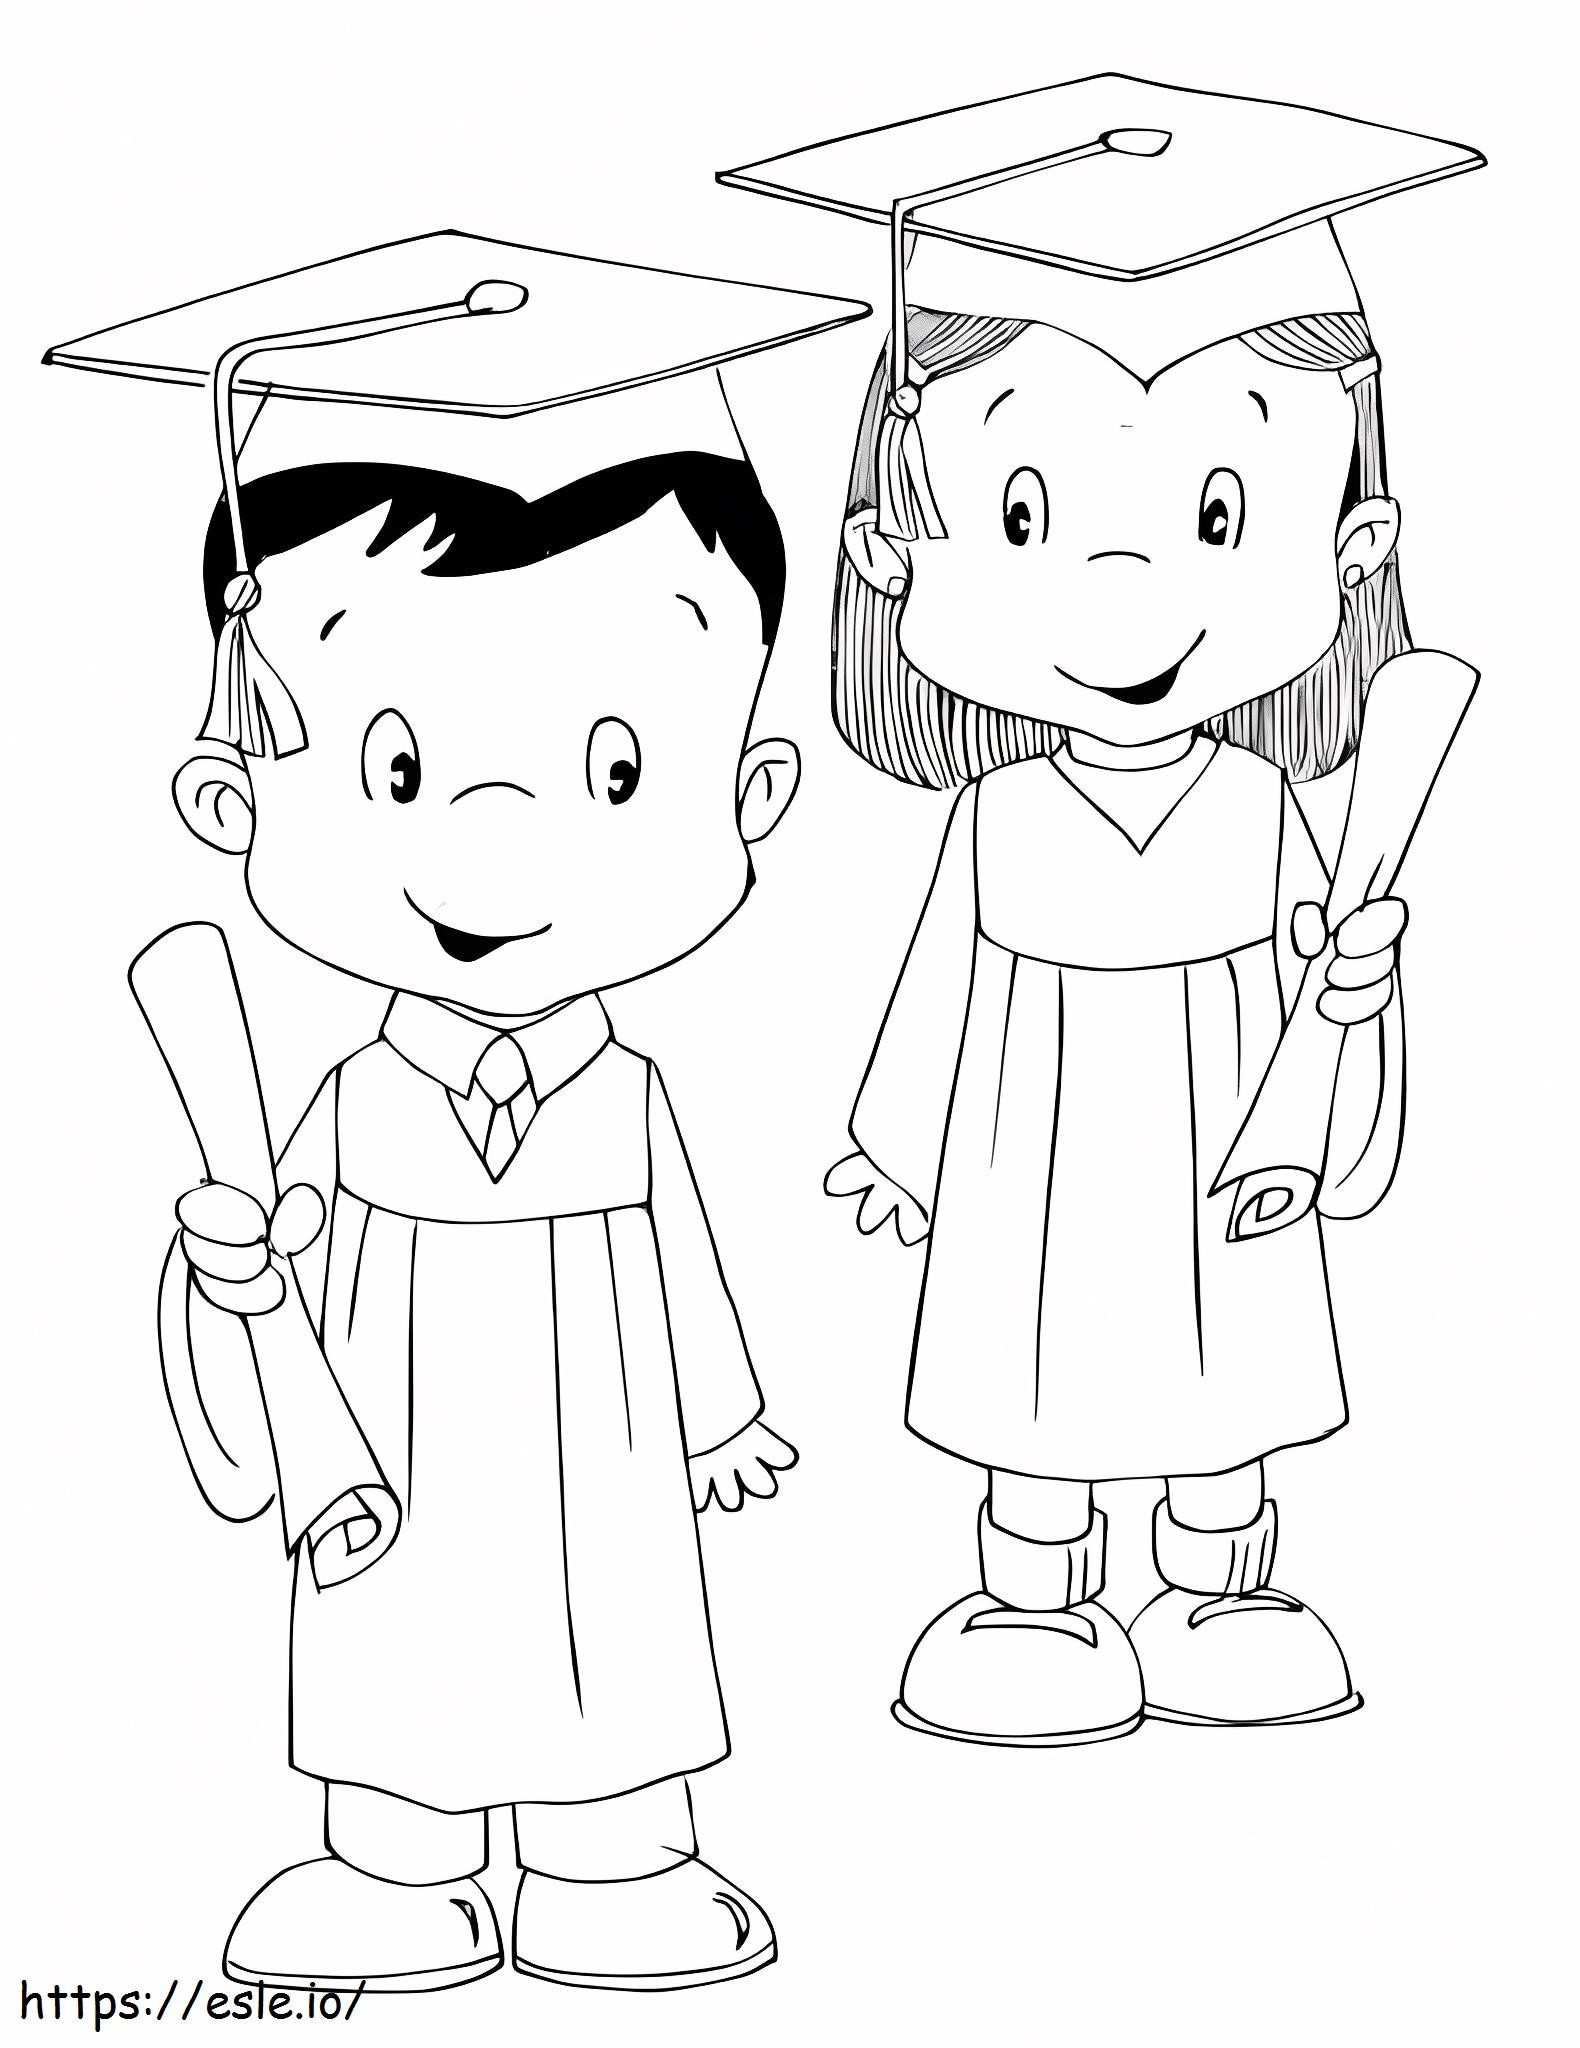 Preschool Graduation coloring page